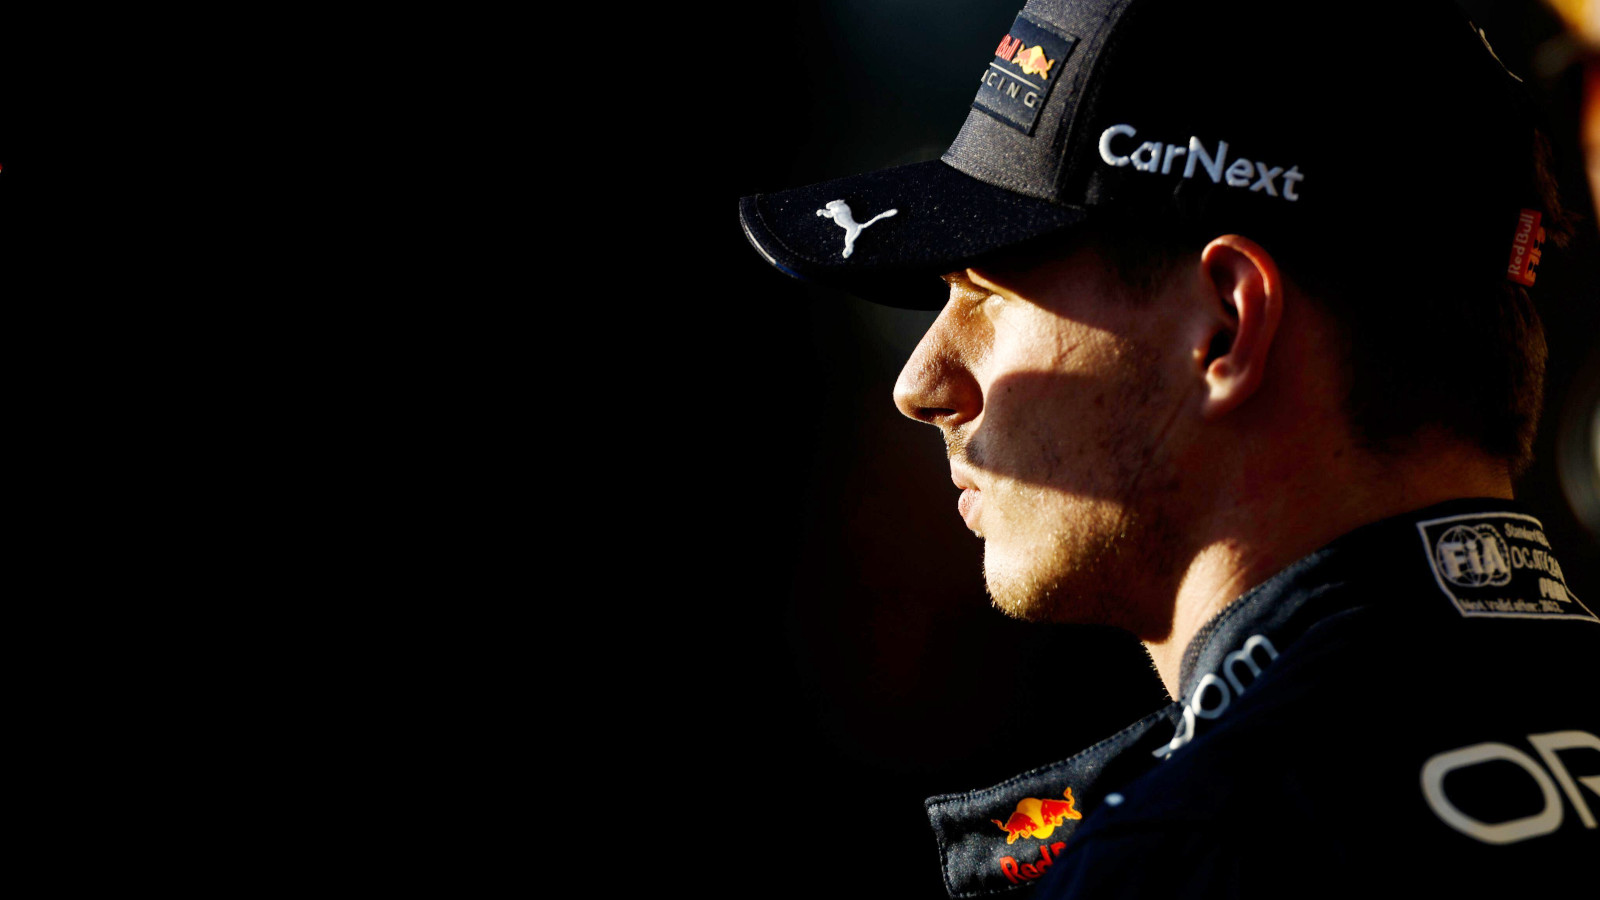 Red Bull e Max Verstappen hanno boicottato Sky Sports dopo i commenti “rubati”: PlanetF1